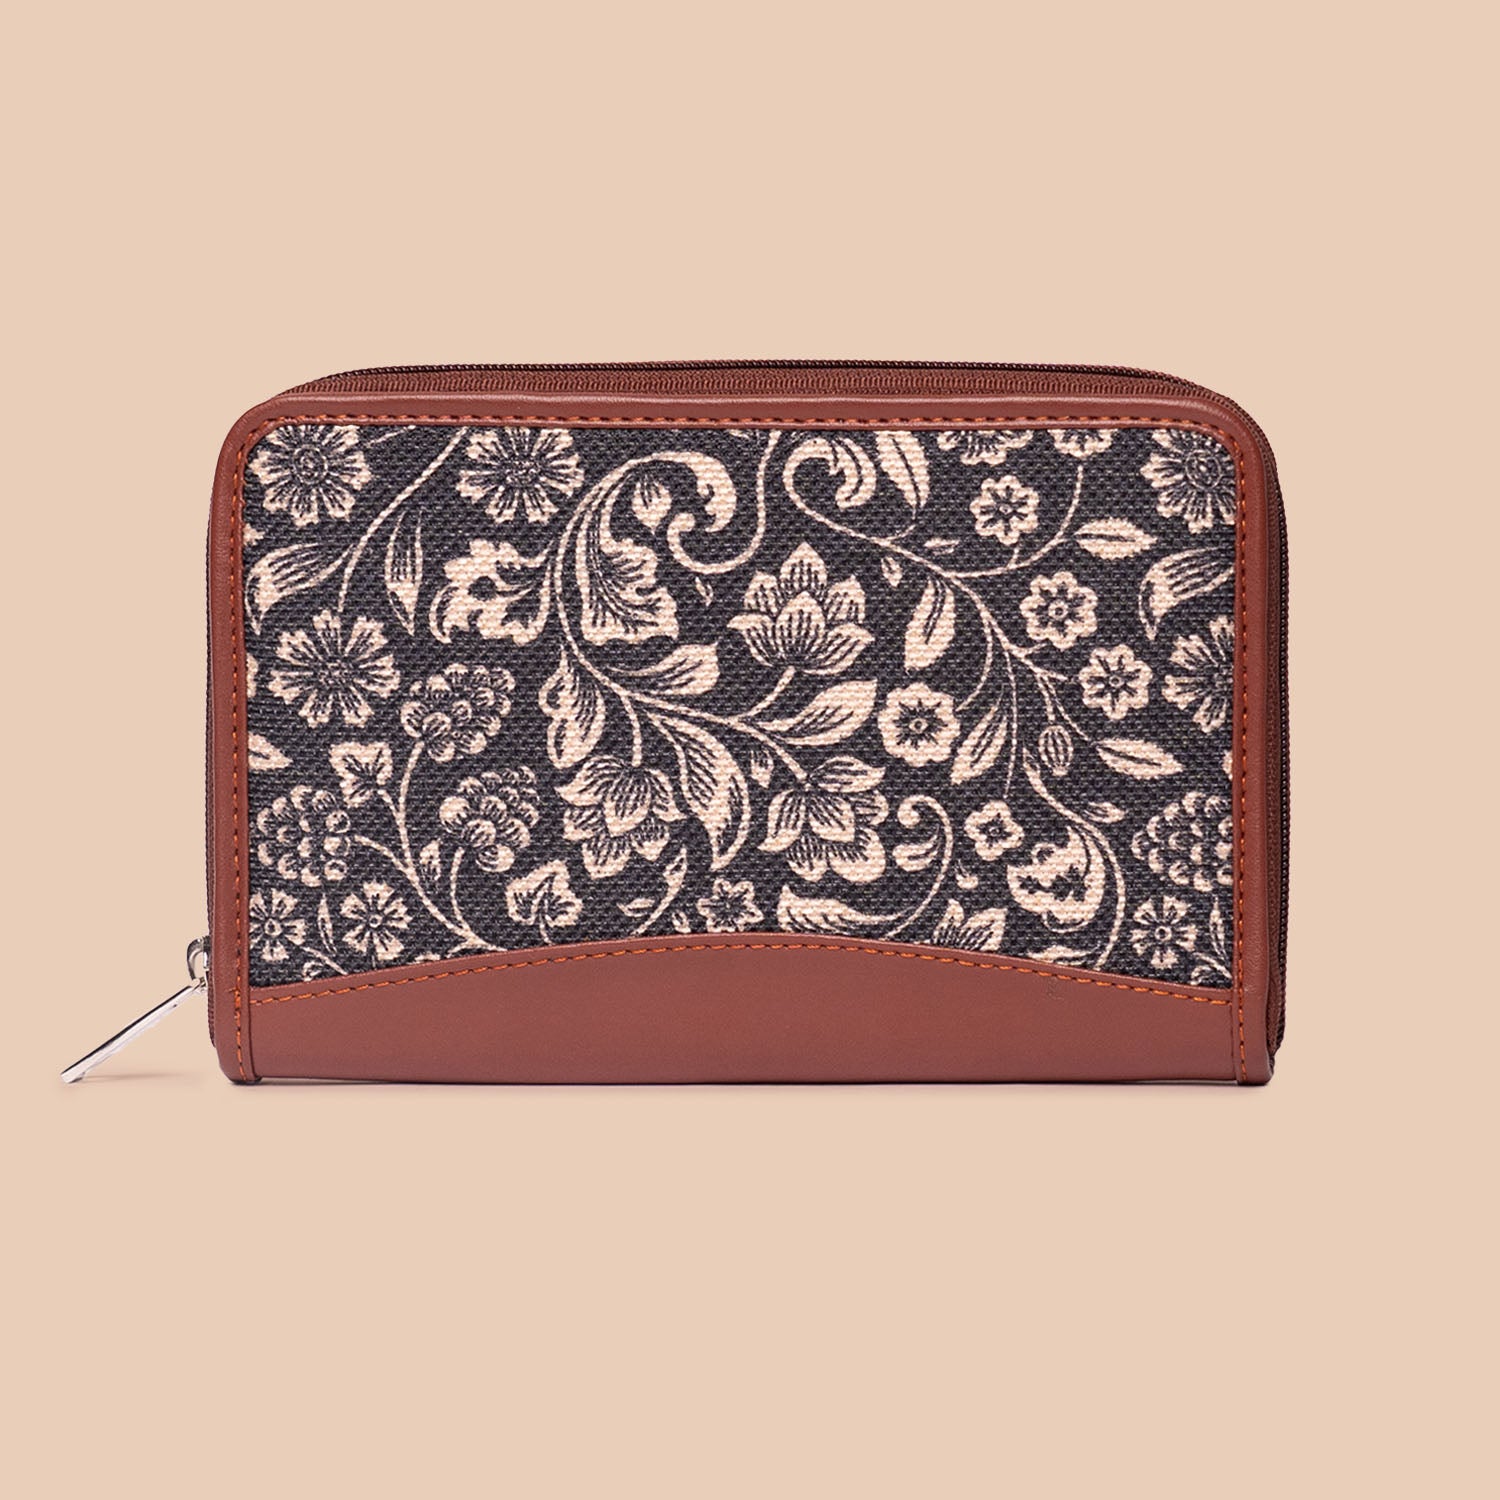 FloMotif - Handbag & Chain Wallet Combo